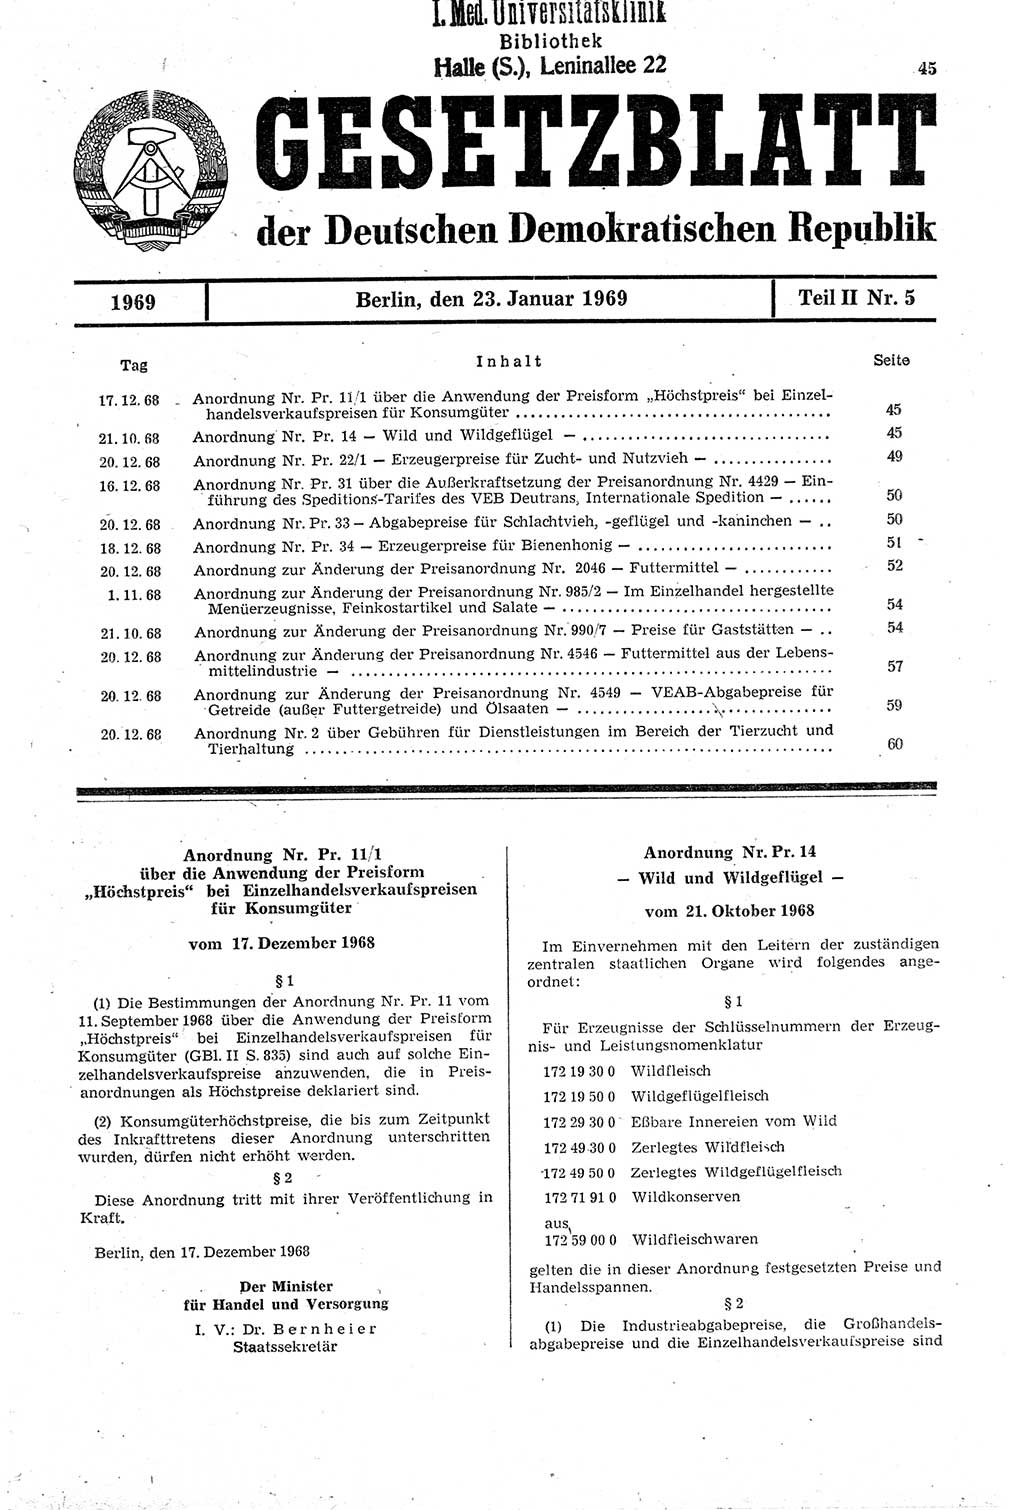 Gesetzblatt (GBl.) der Deutschen Demokratischen Republik (DDR) Teil ⅠⅠ 1969, Seite 45 (GBl. DDR ⅠⅠ 1969, S. 45)